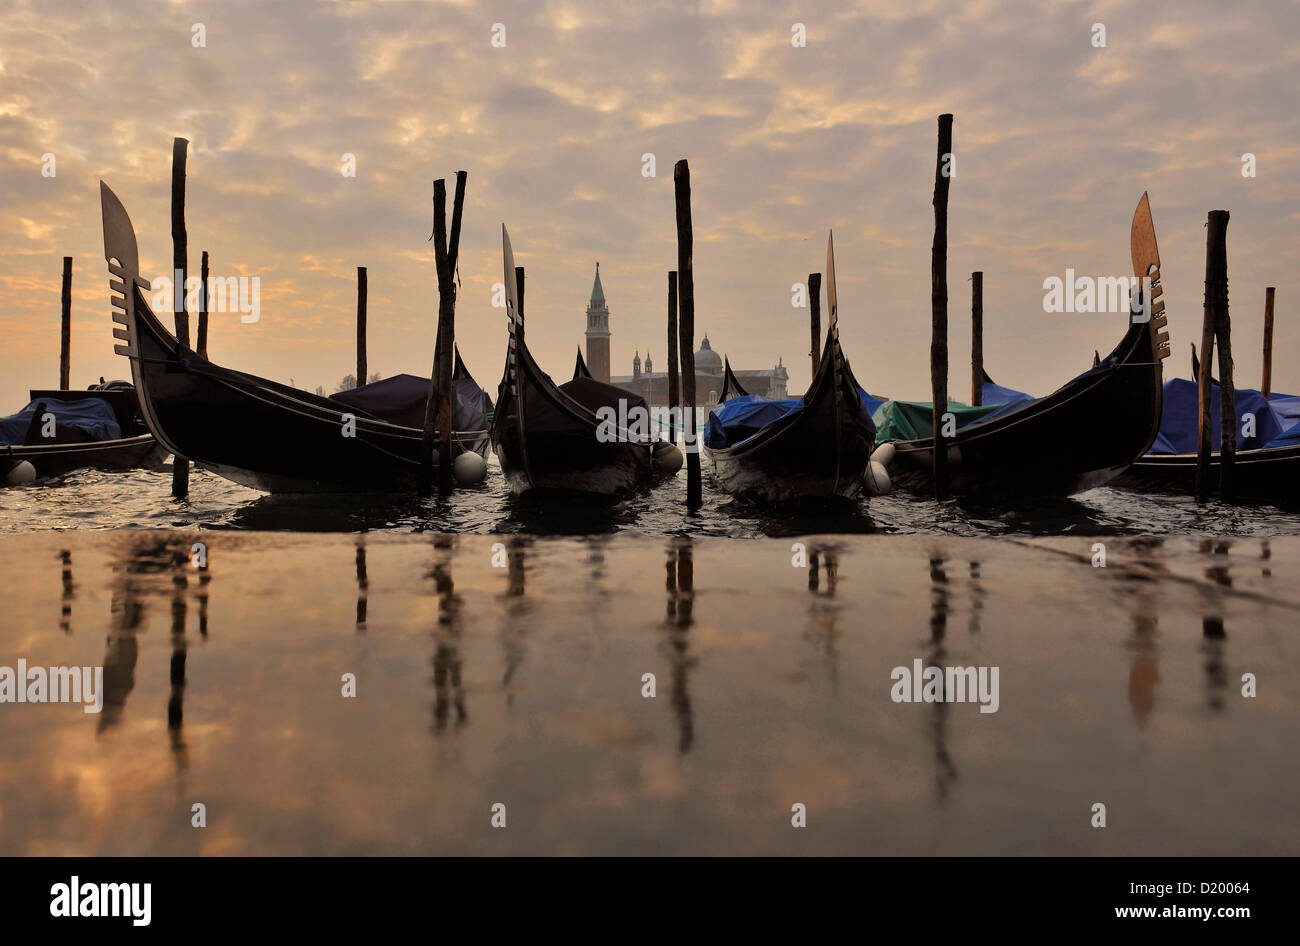 La góndola, Aqua Alta, San Giorgio, Venecia, Véneto, Italia Foto de stock